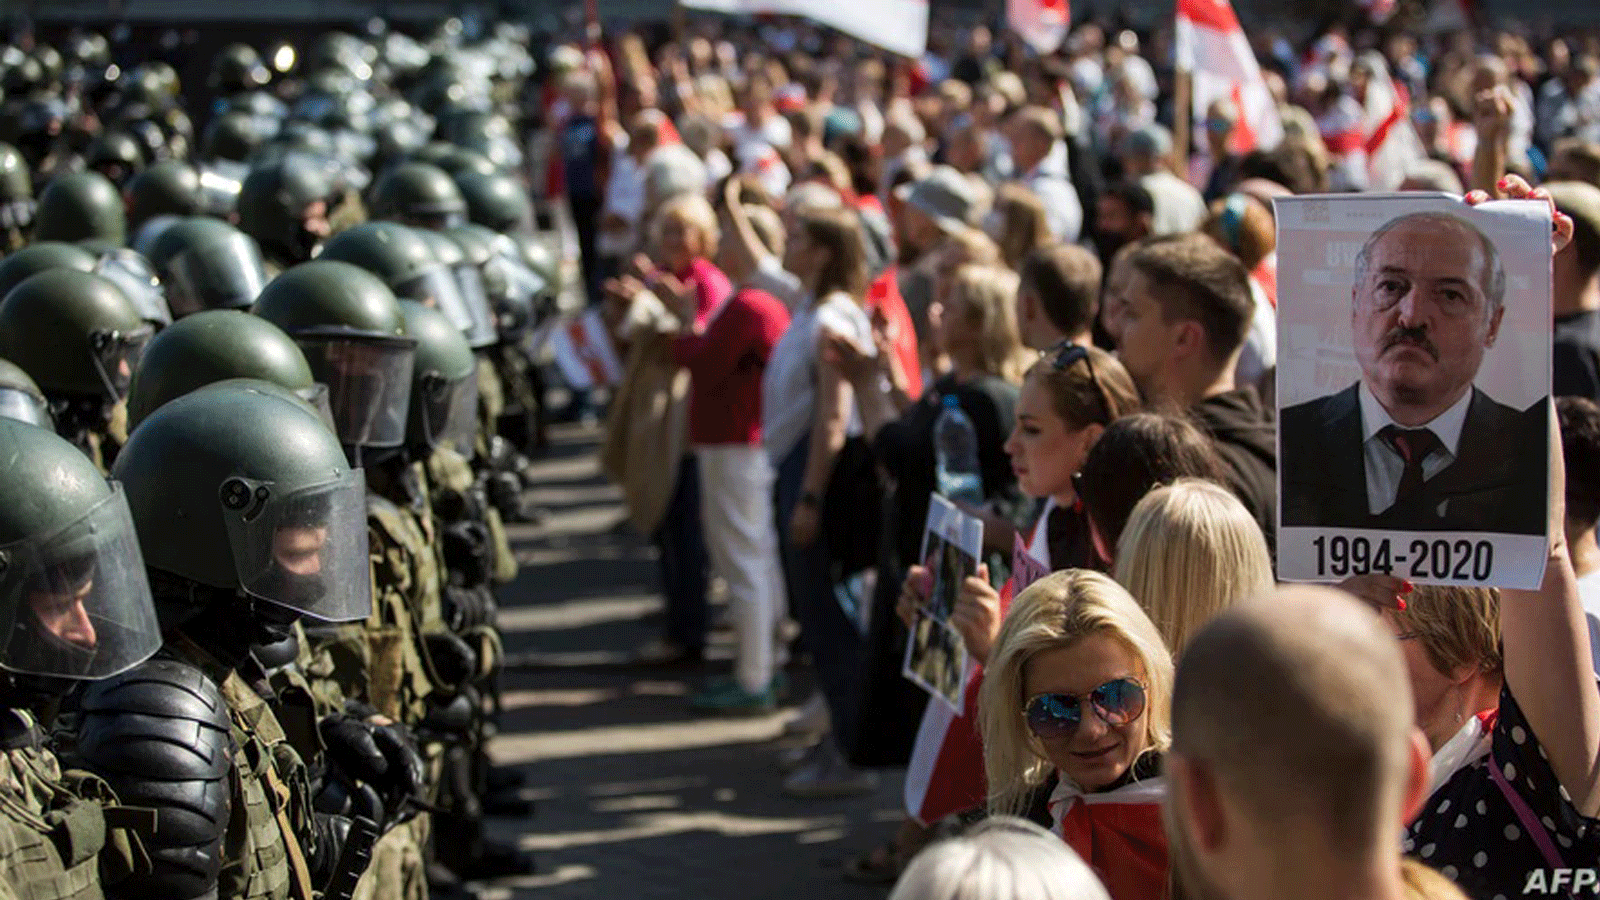 قوات الأمن البيلاروسية تُغلِق شارعًا خلال تجمع معارض يطعن في نتائج الانتخابات الرئاسية الرسمية. في مينسك، بيلاروسيا، 30 آب/أغسطس 2020. ويظهر على اللافتة رسم الرئيس ألكسندر لوكاشينكو والسنوات التي قضاها في السلطة.